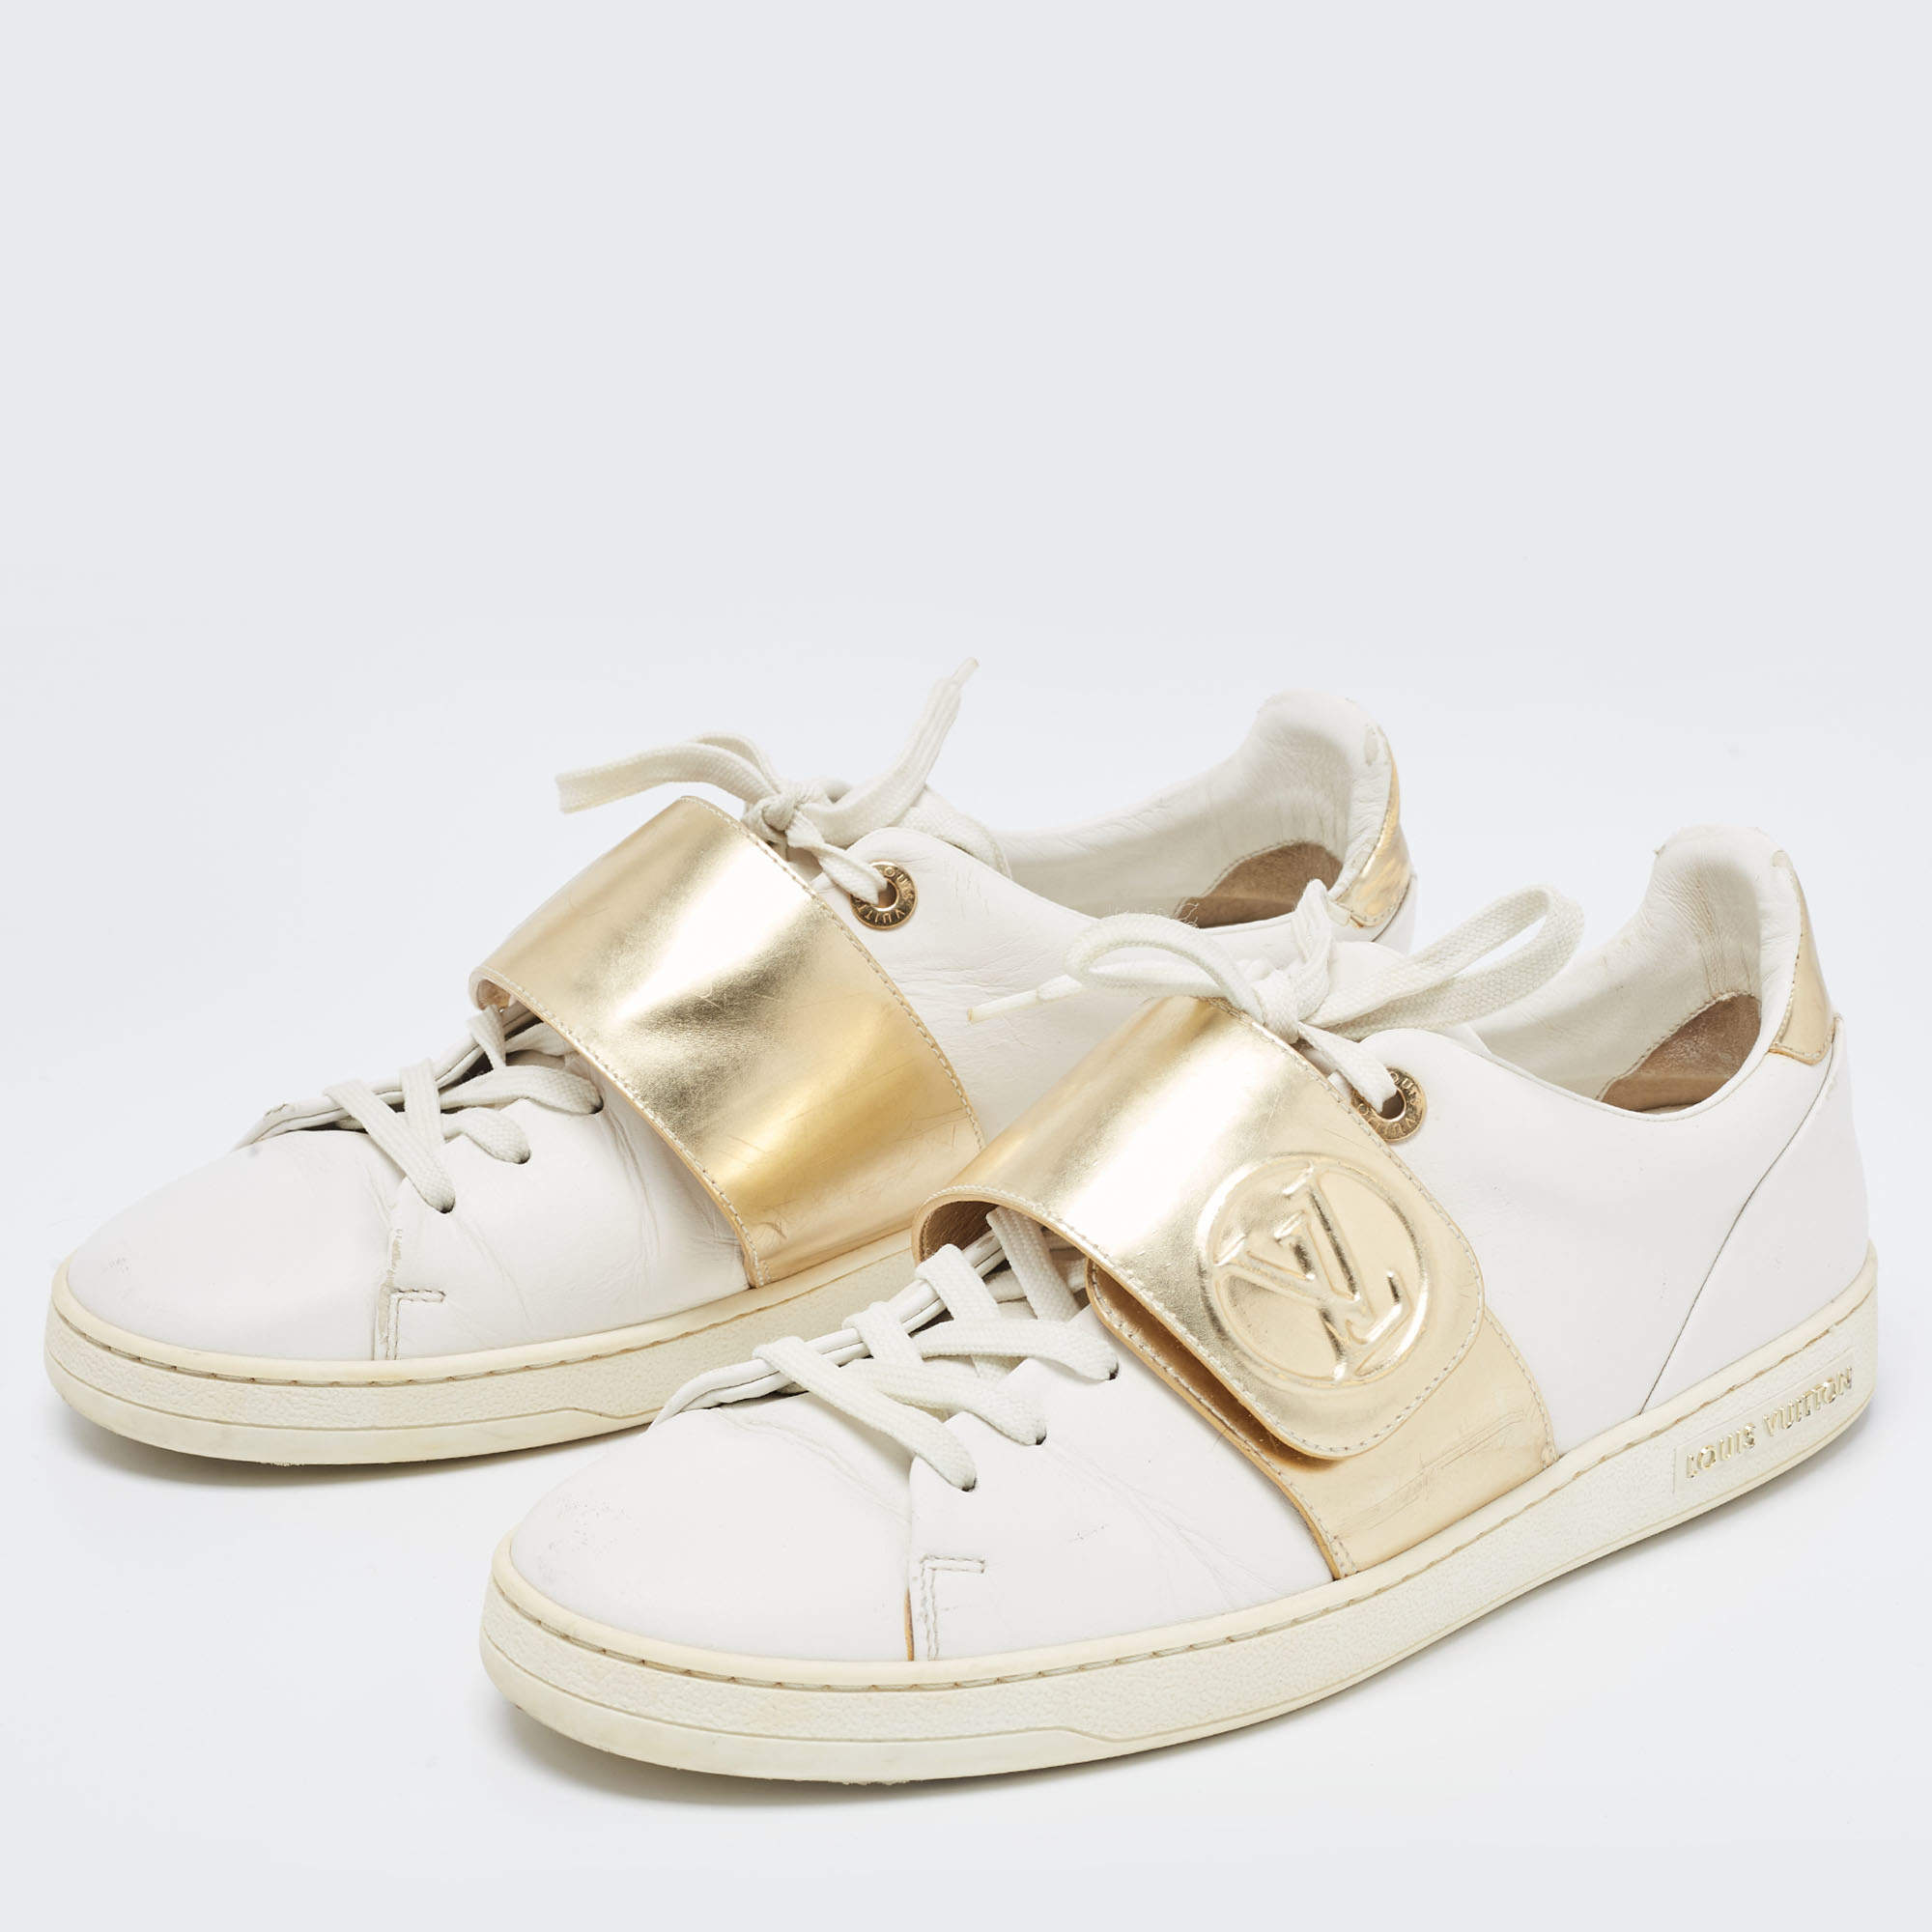 Louis Vuitton Frontrow White Leather 2018 Kyoto Sneaker Size 41 US